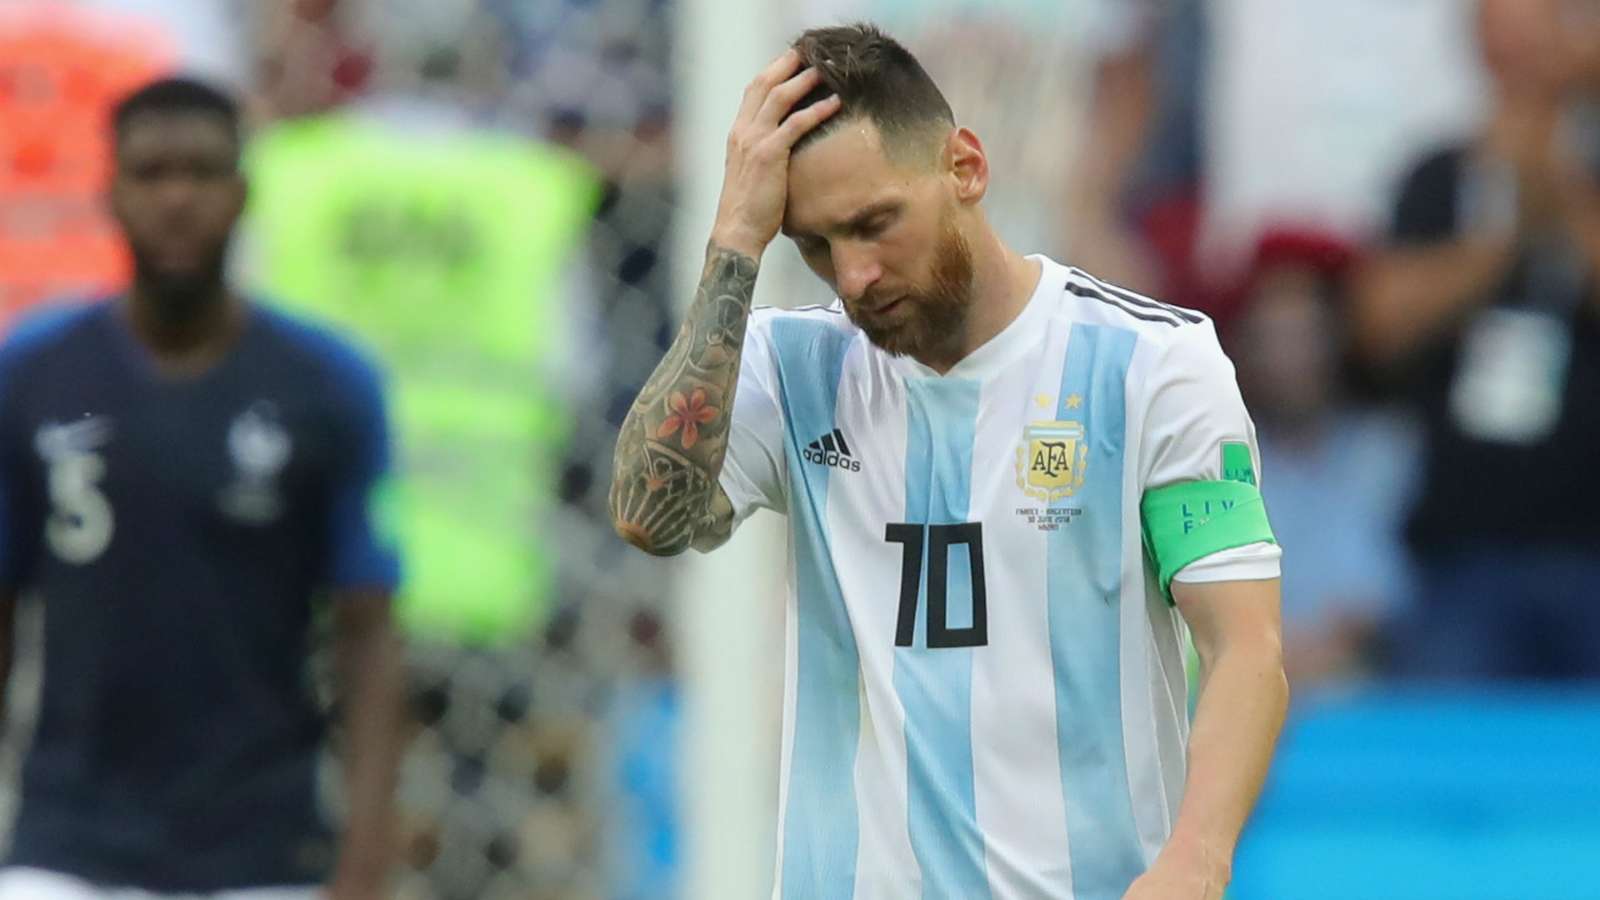 آرژانتین-تیم ملی آرژانتین-ایسلند-جام جهانی 2018-مهاجم آرژانتین-Argentina